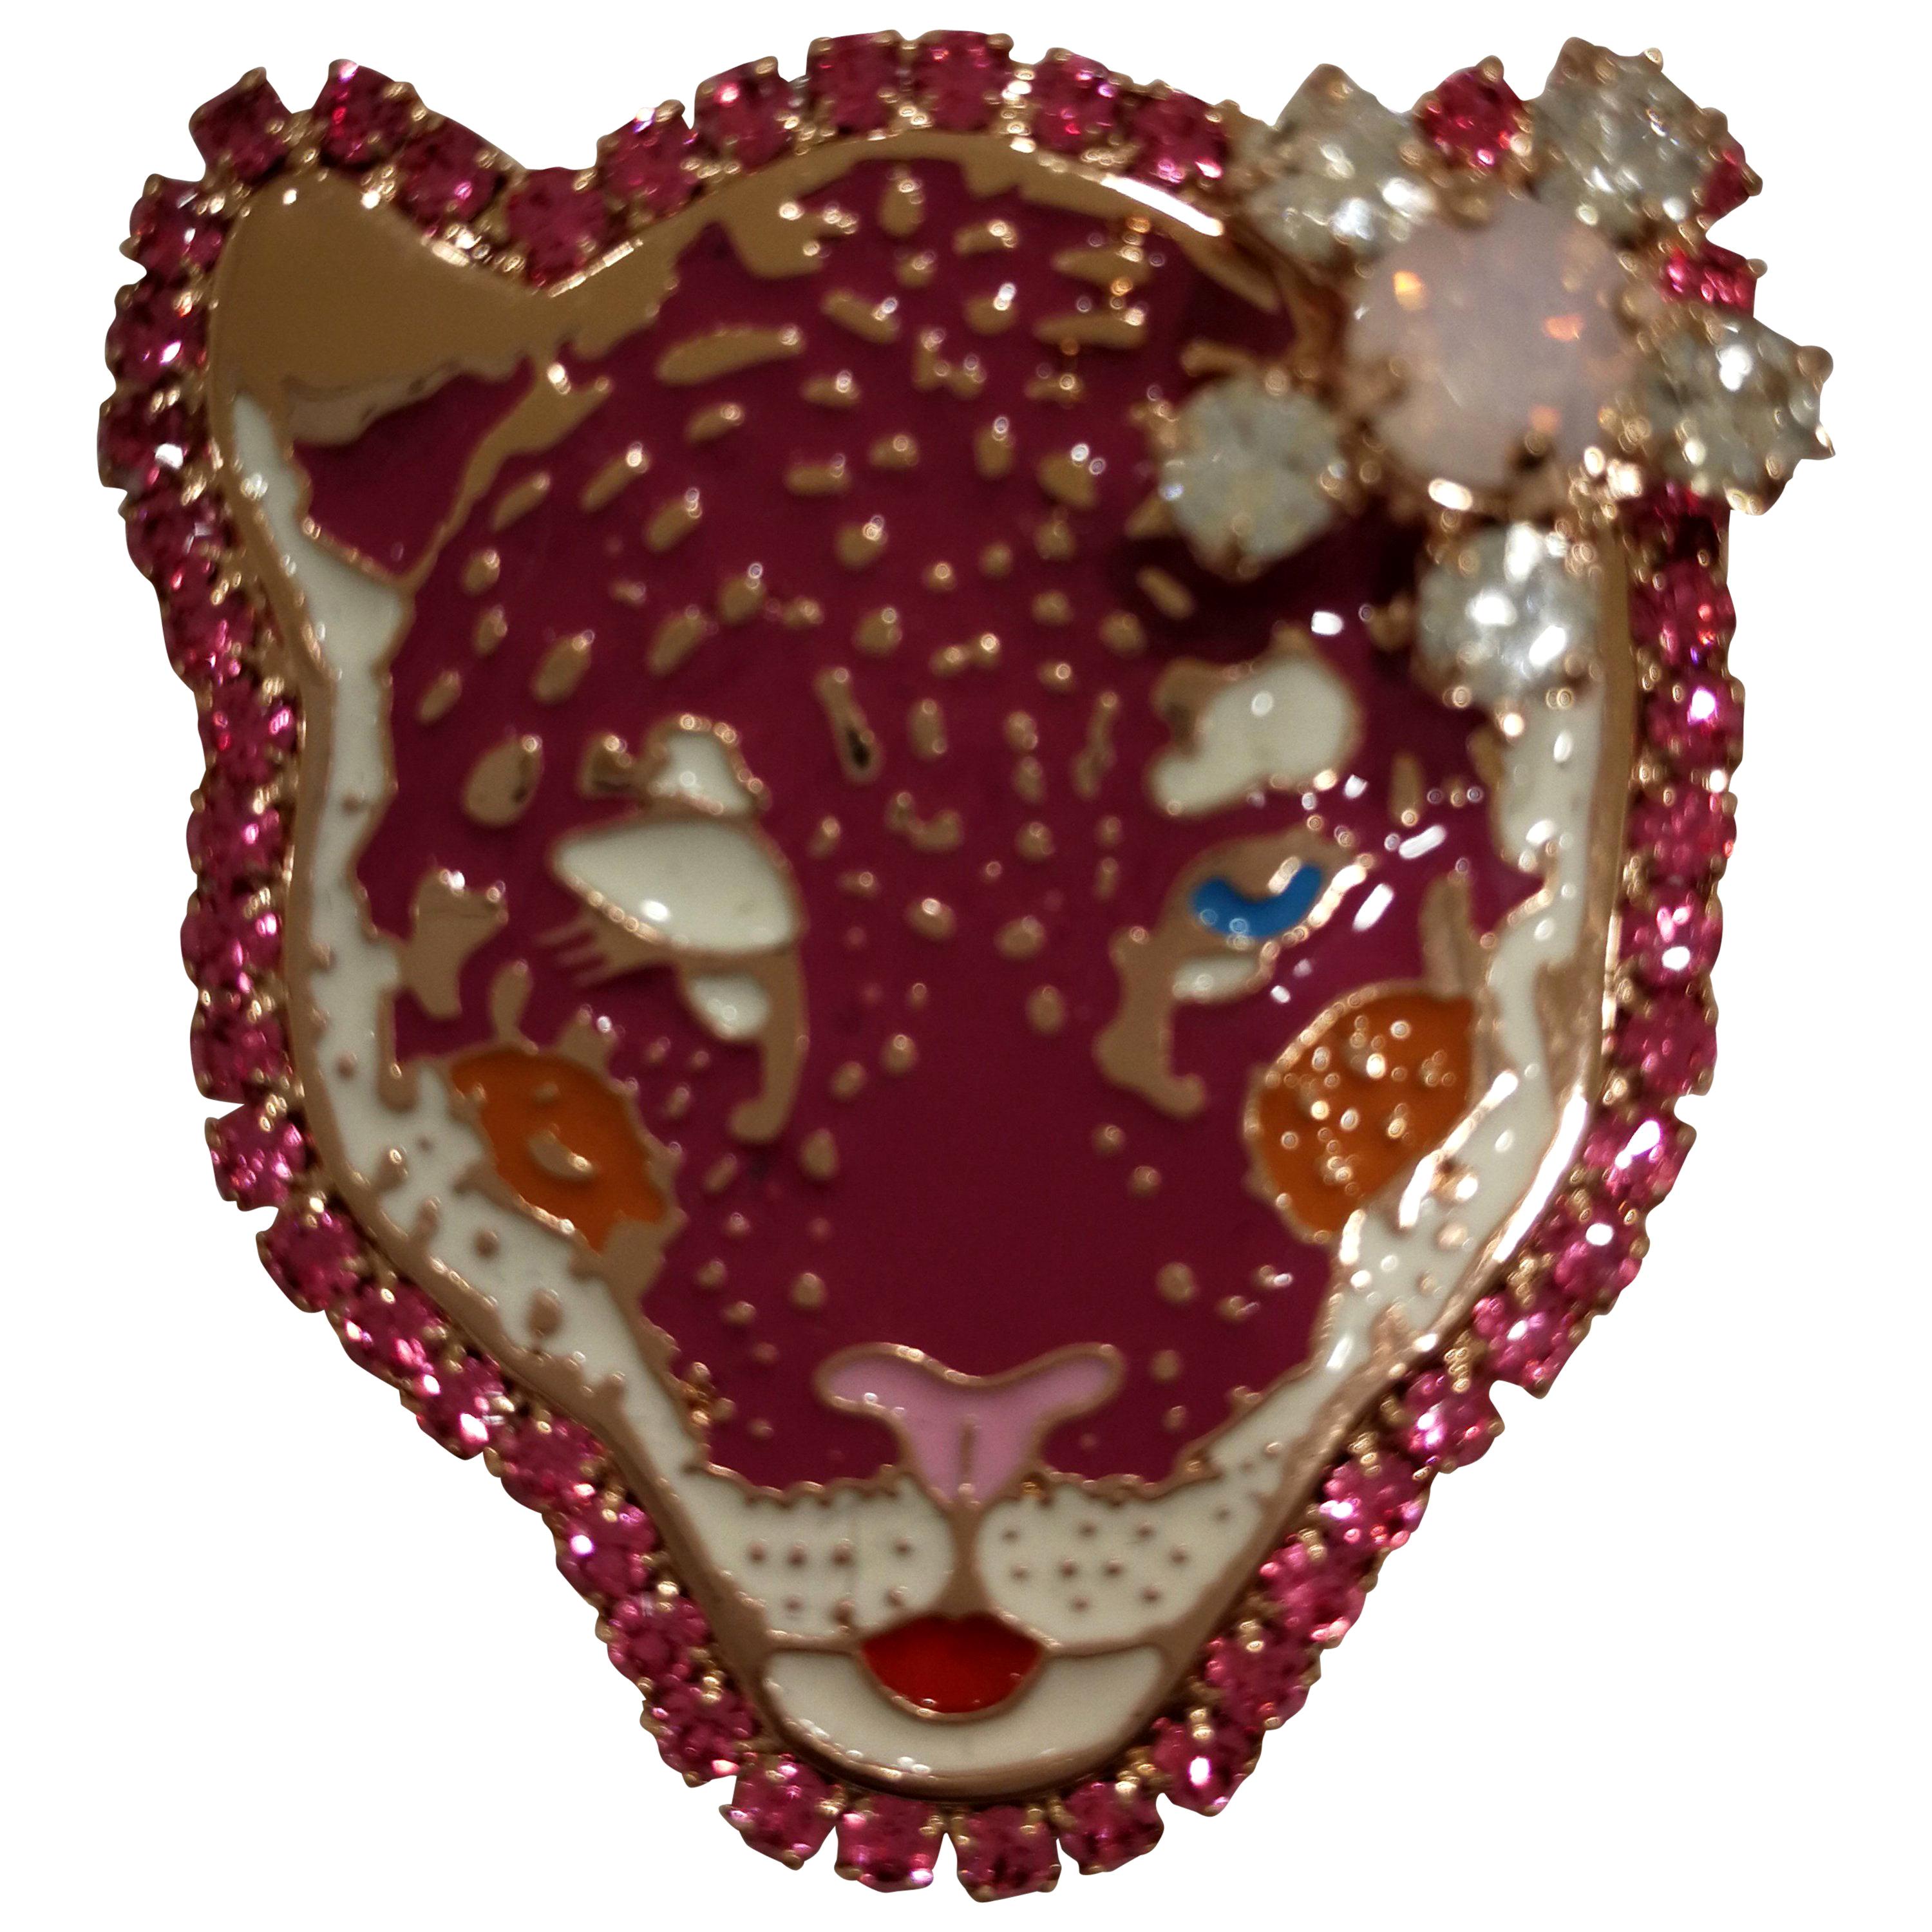 Lisa C. Tiger Brooch pin